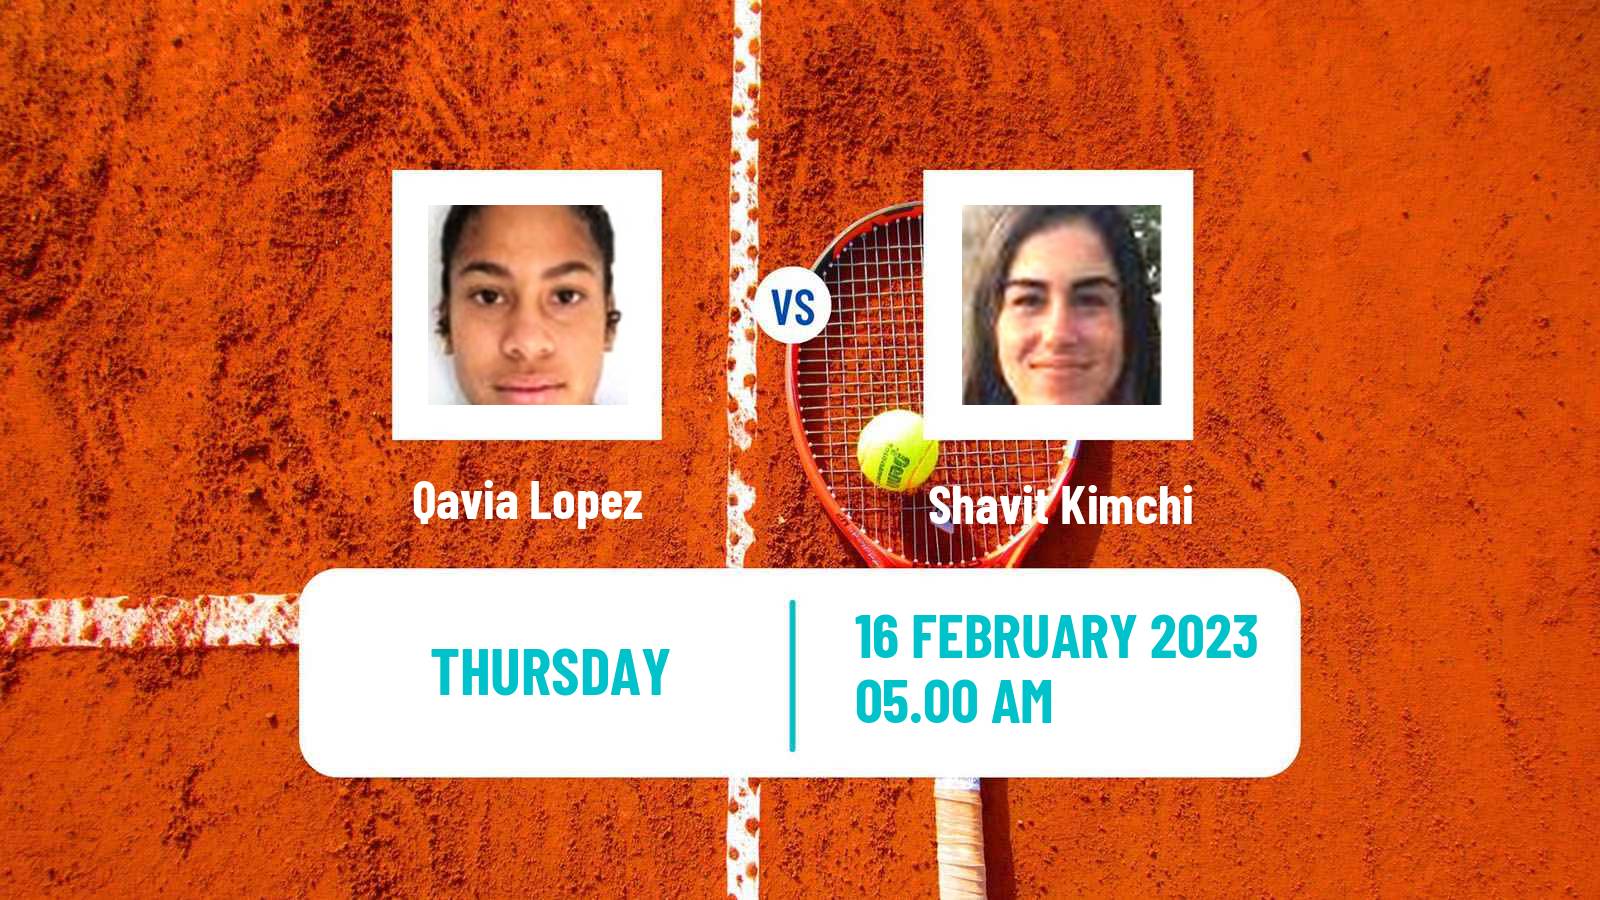 Tennis ITF Tournaments Qavia Lopez - Shavit Kimchi